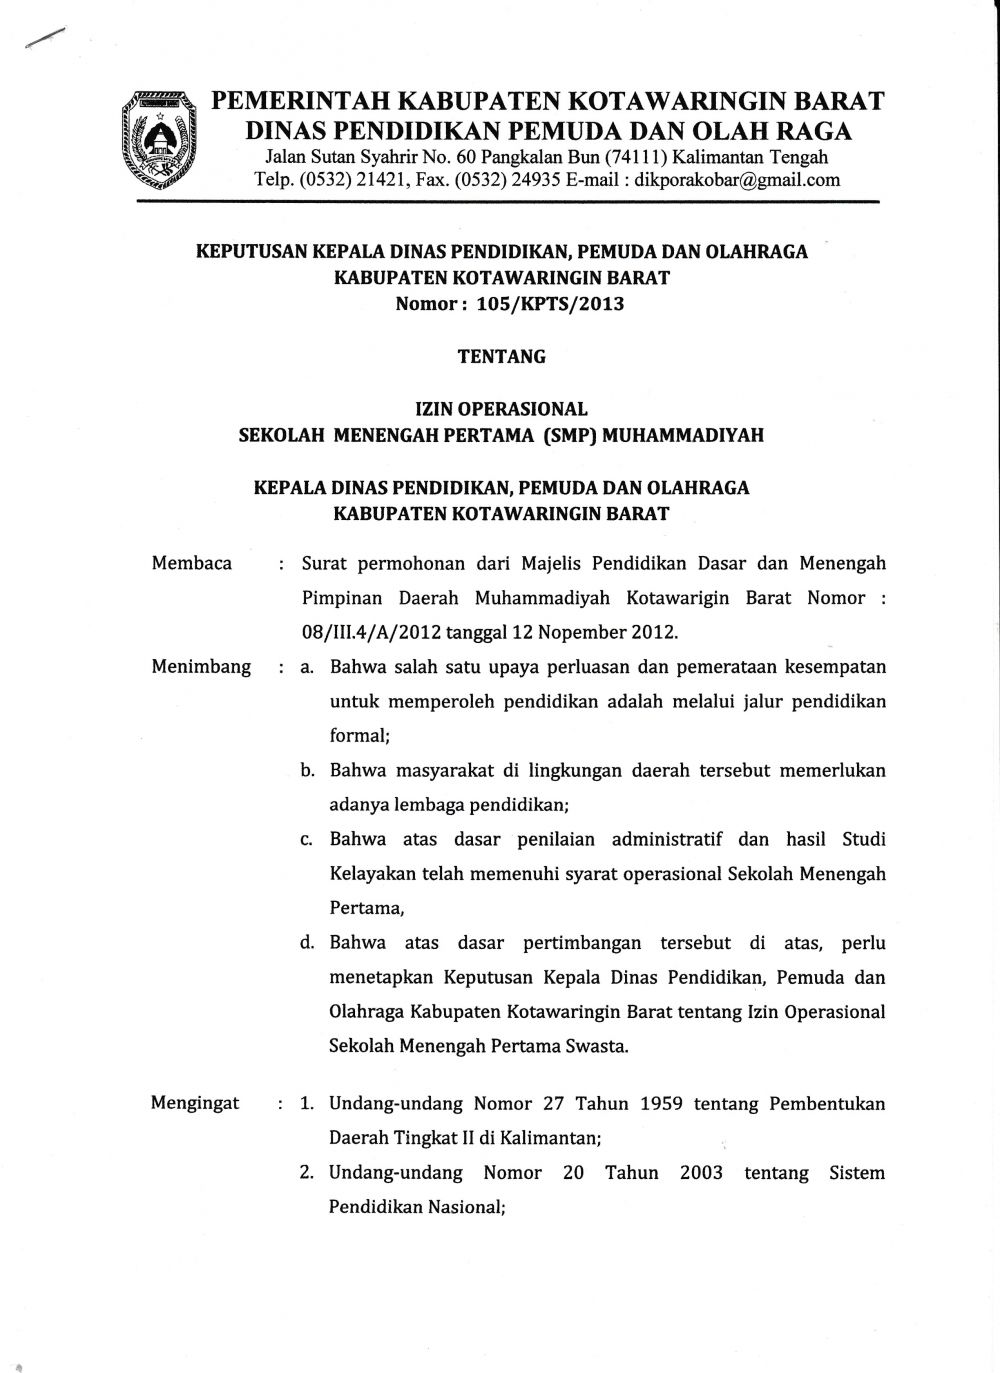 Ijin Operasional Smp Pdm Kabupaten Kotawaringin Barat